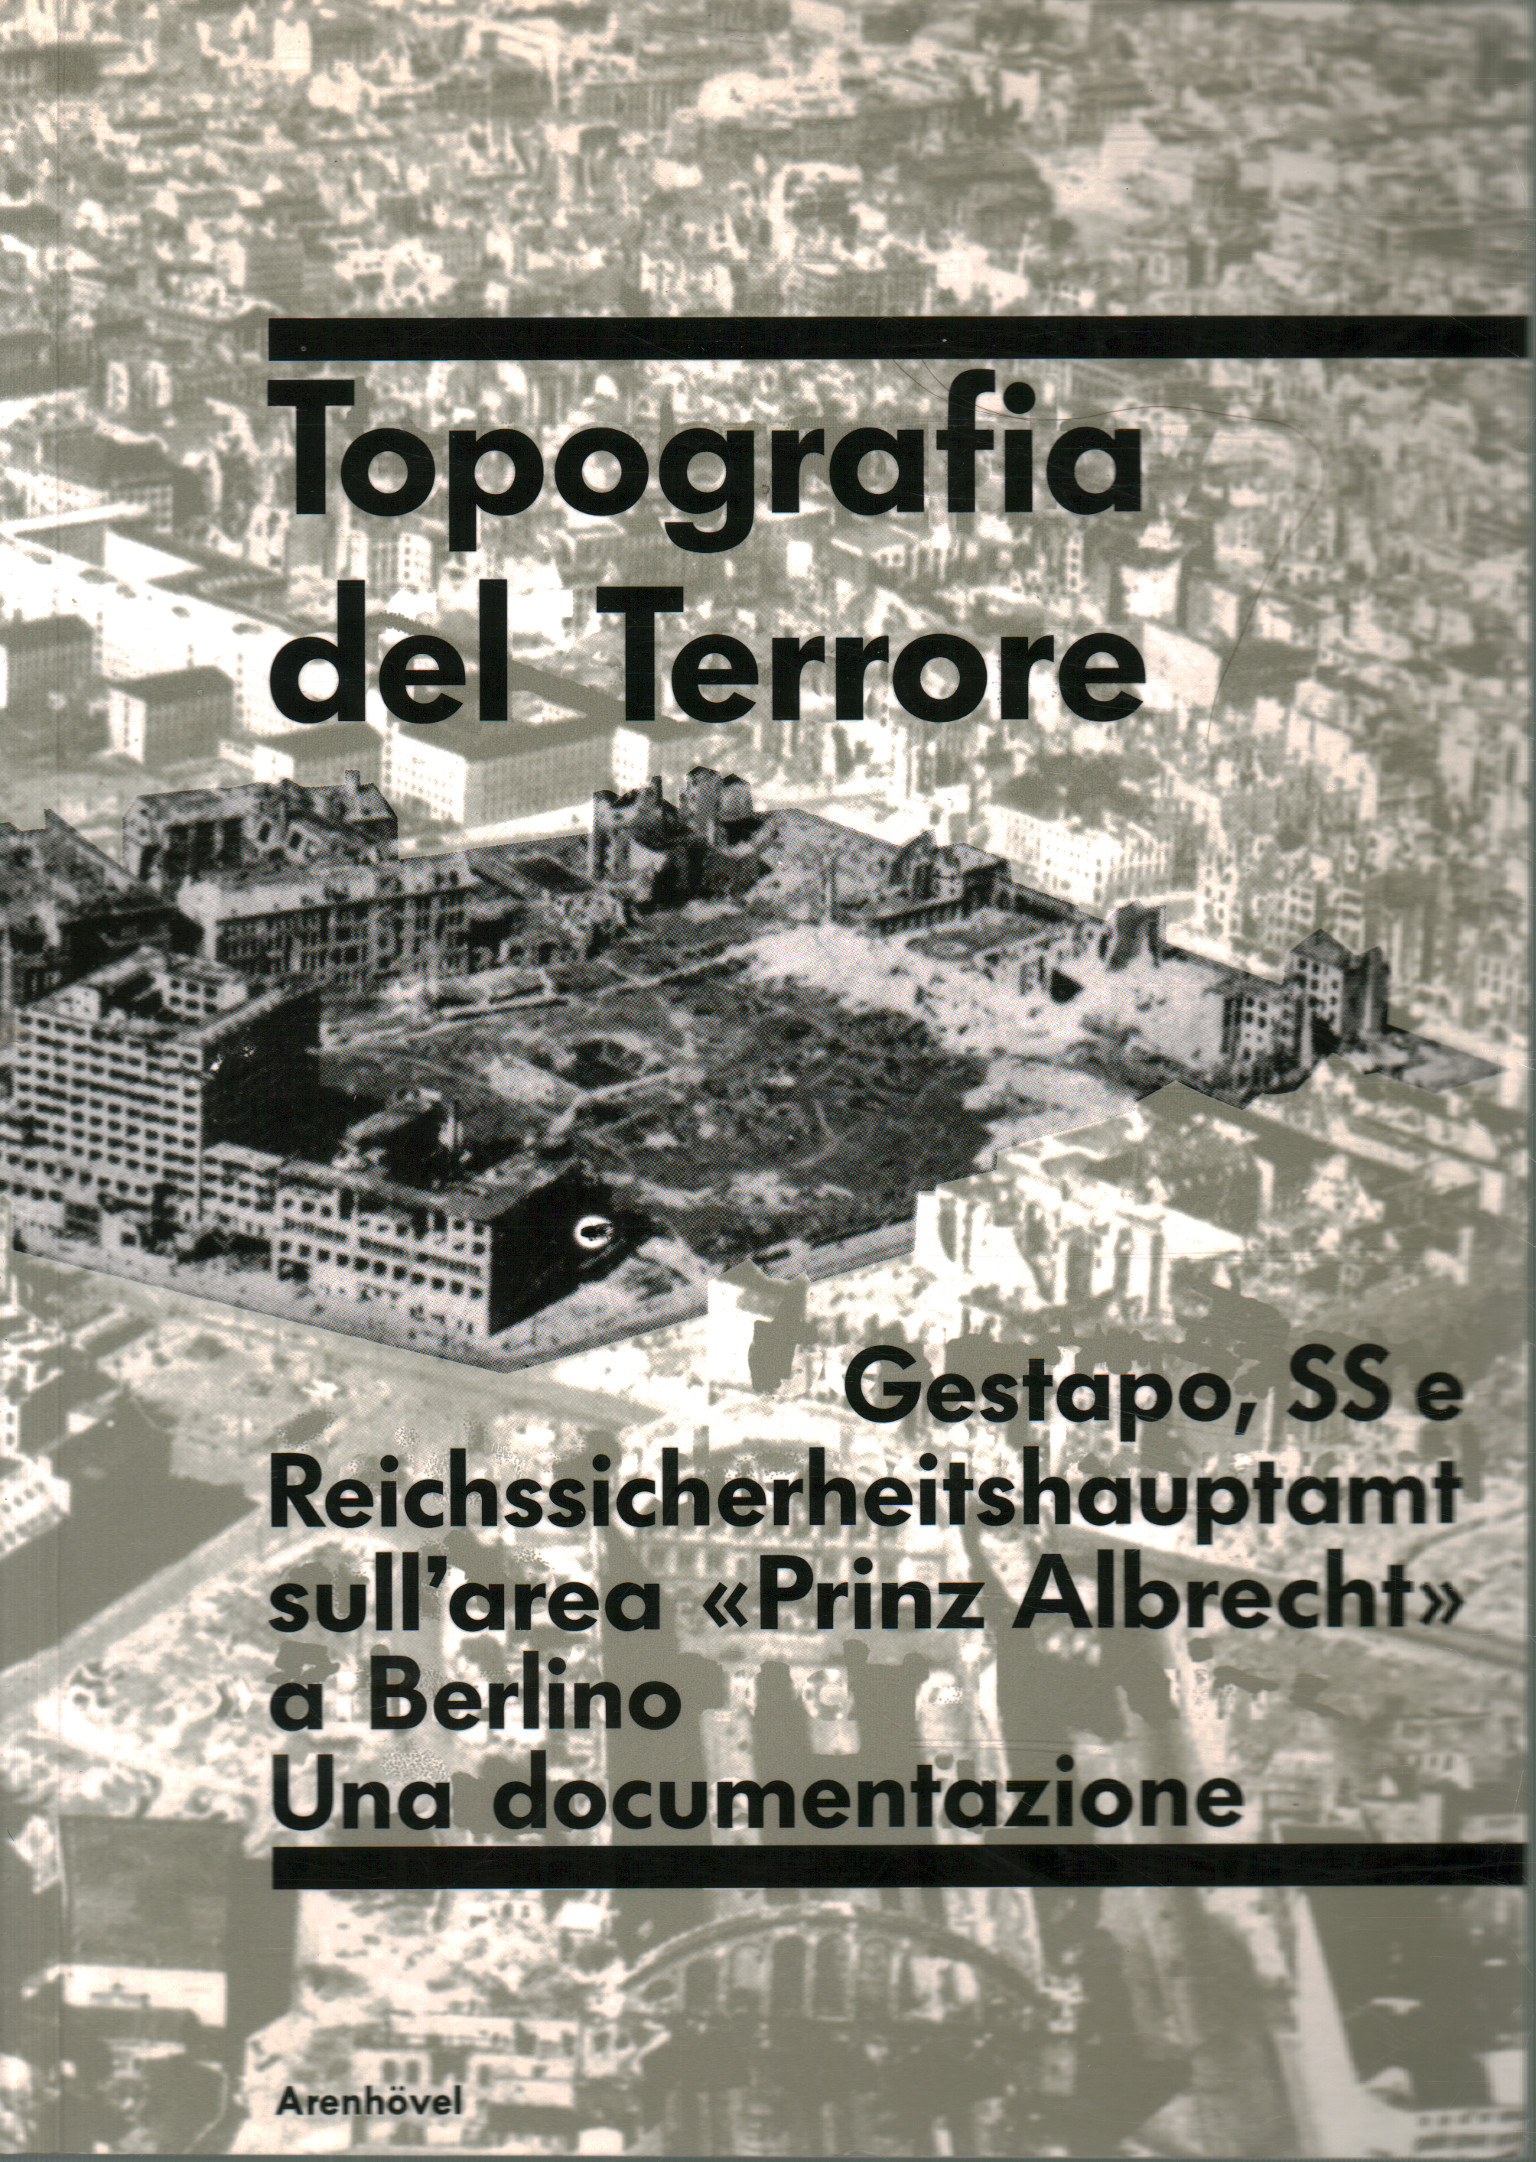 Topographie des Terrors, Reinhard Rurup